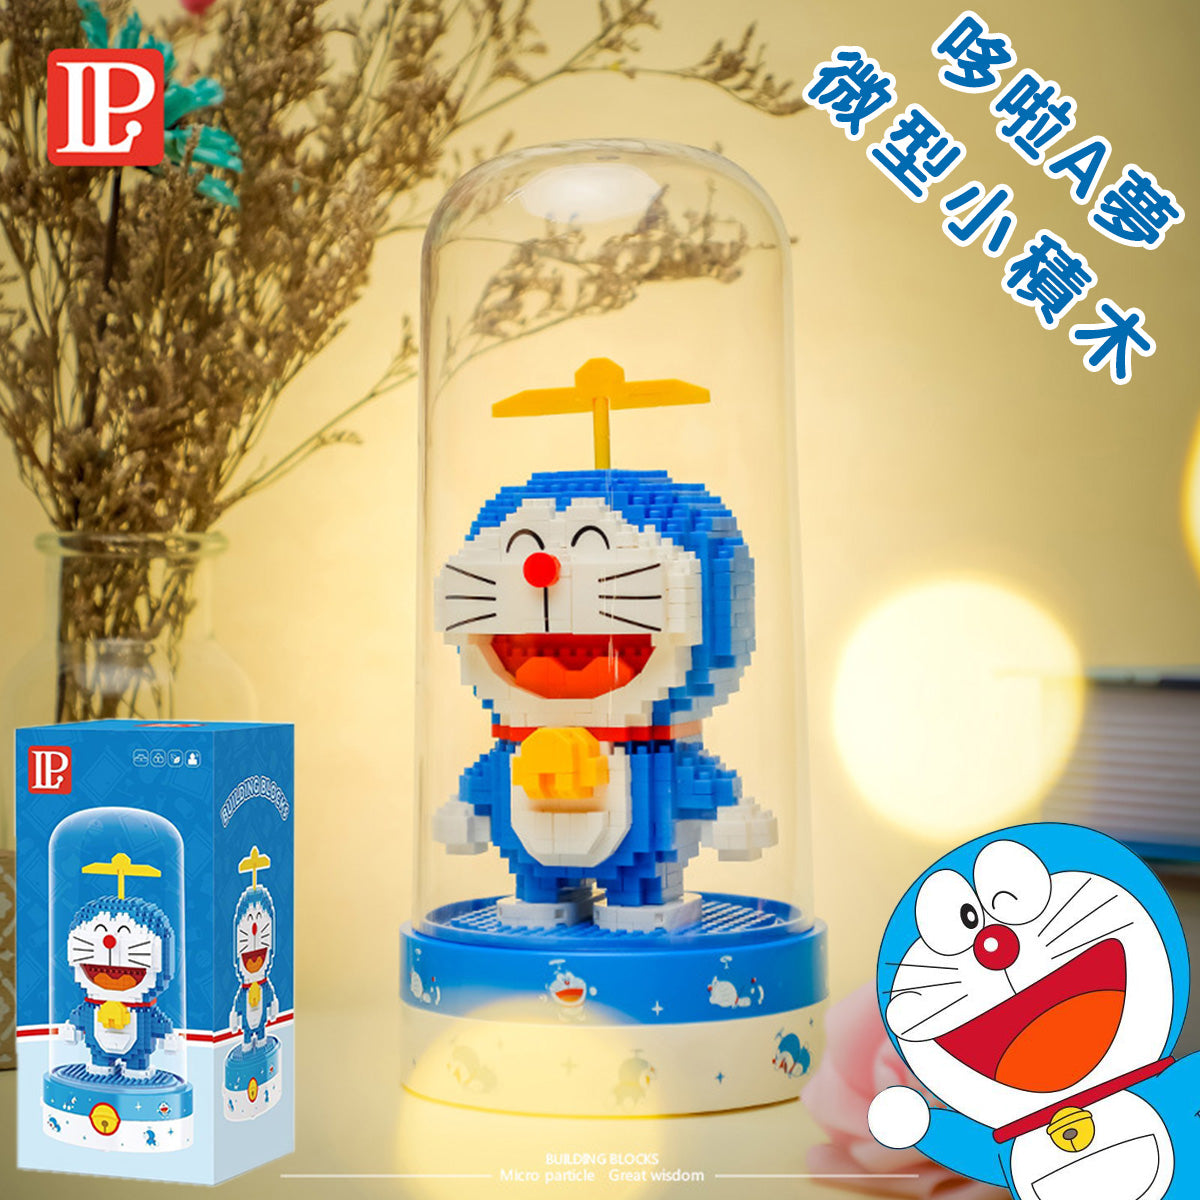 Iblock Doraemon Bamboo Copter 619pcs